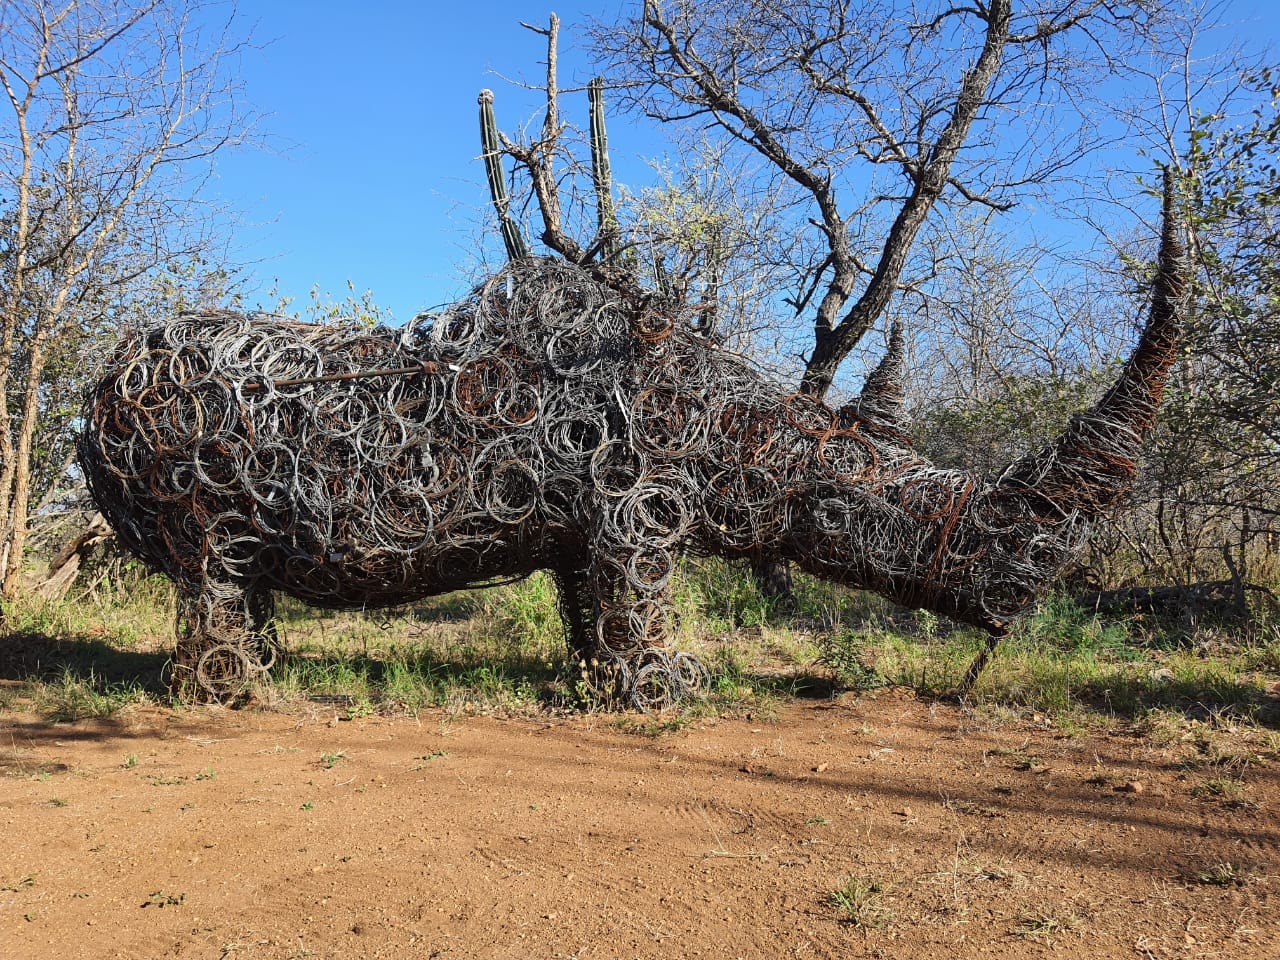 Rhino-Snare